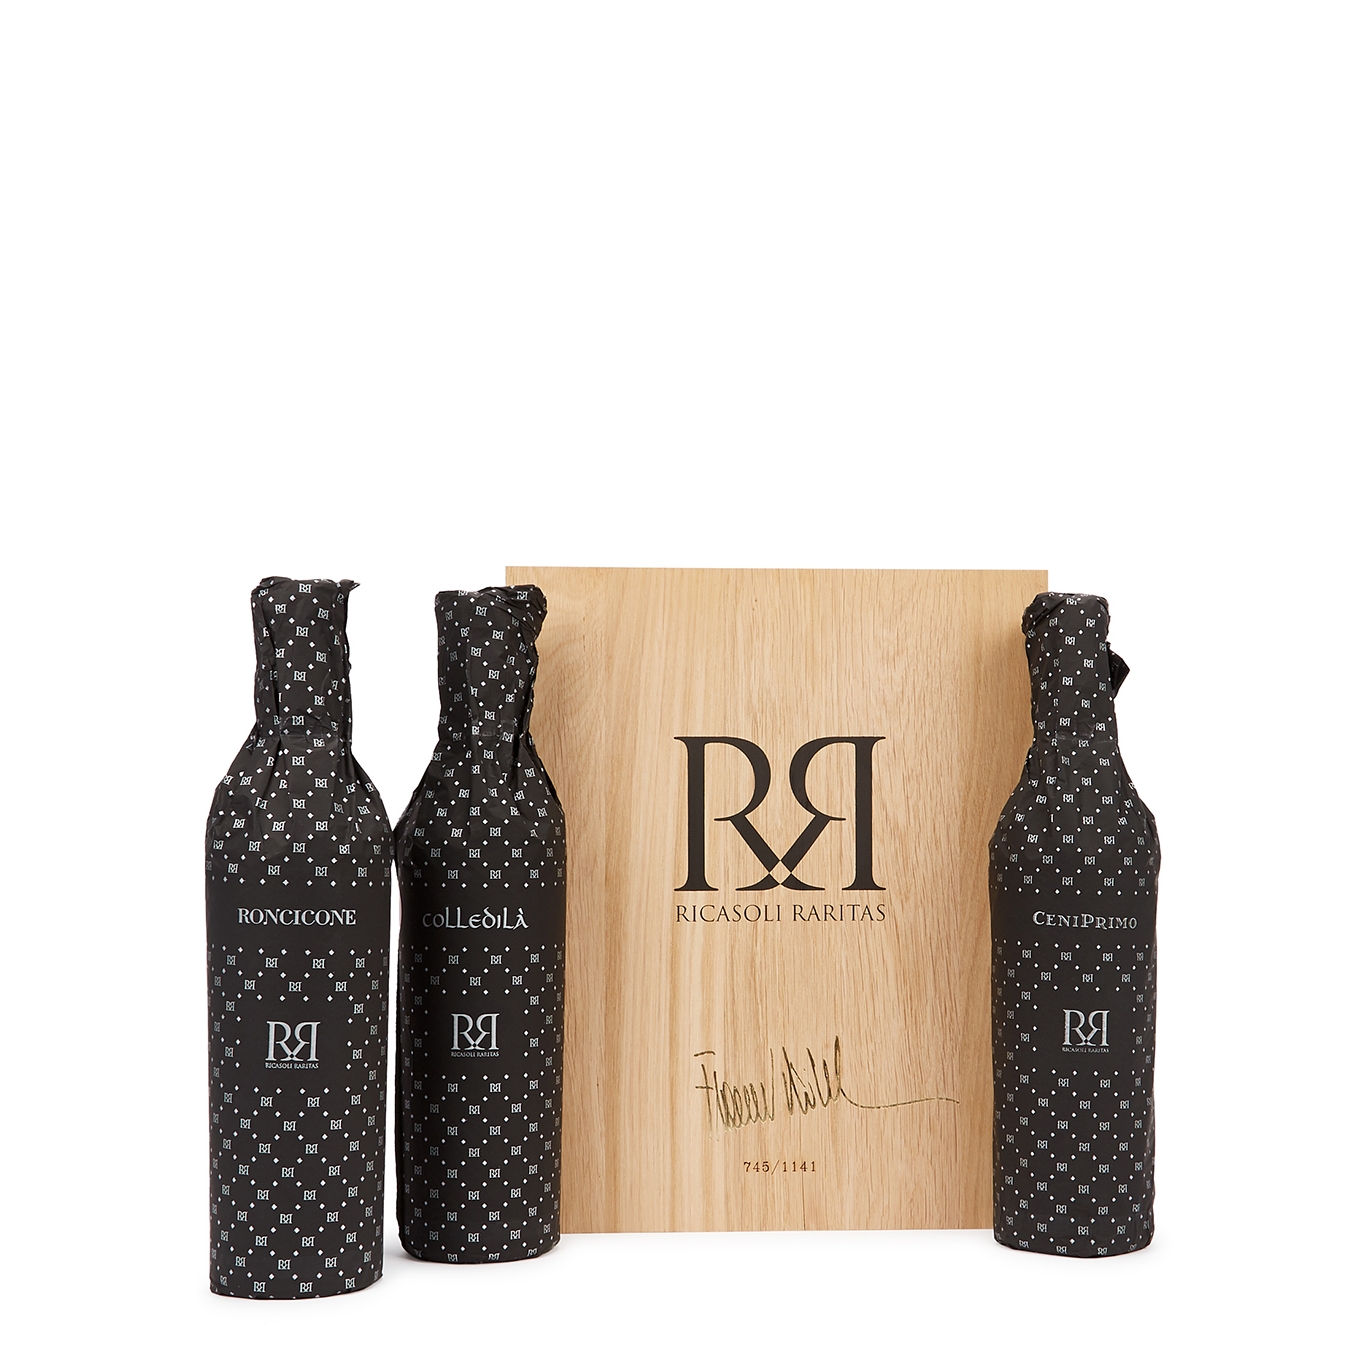 Barone Ricasoli Ricasoli Raritas Chianti Classico 2015 Gift Box 2250ml Red Wine